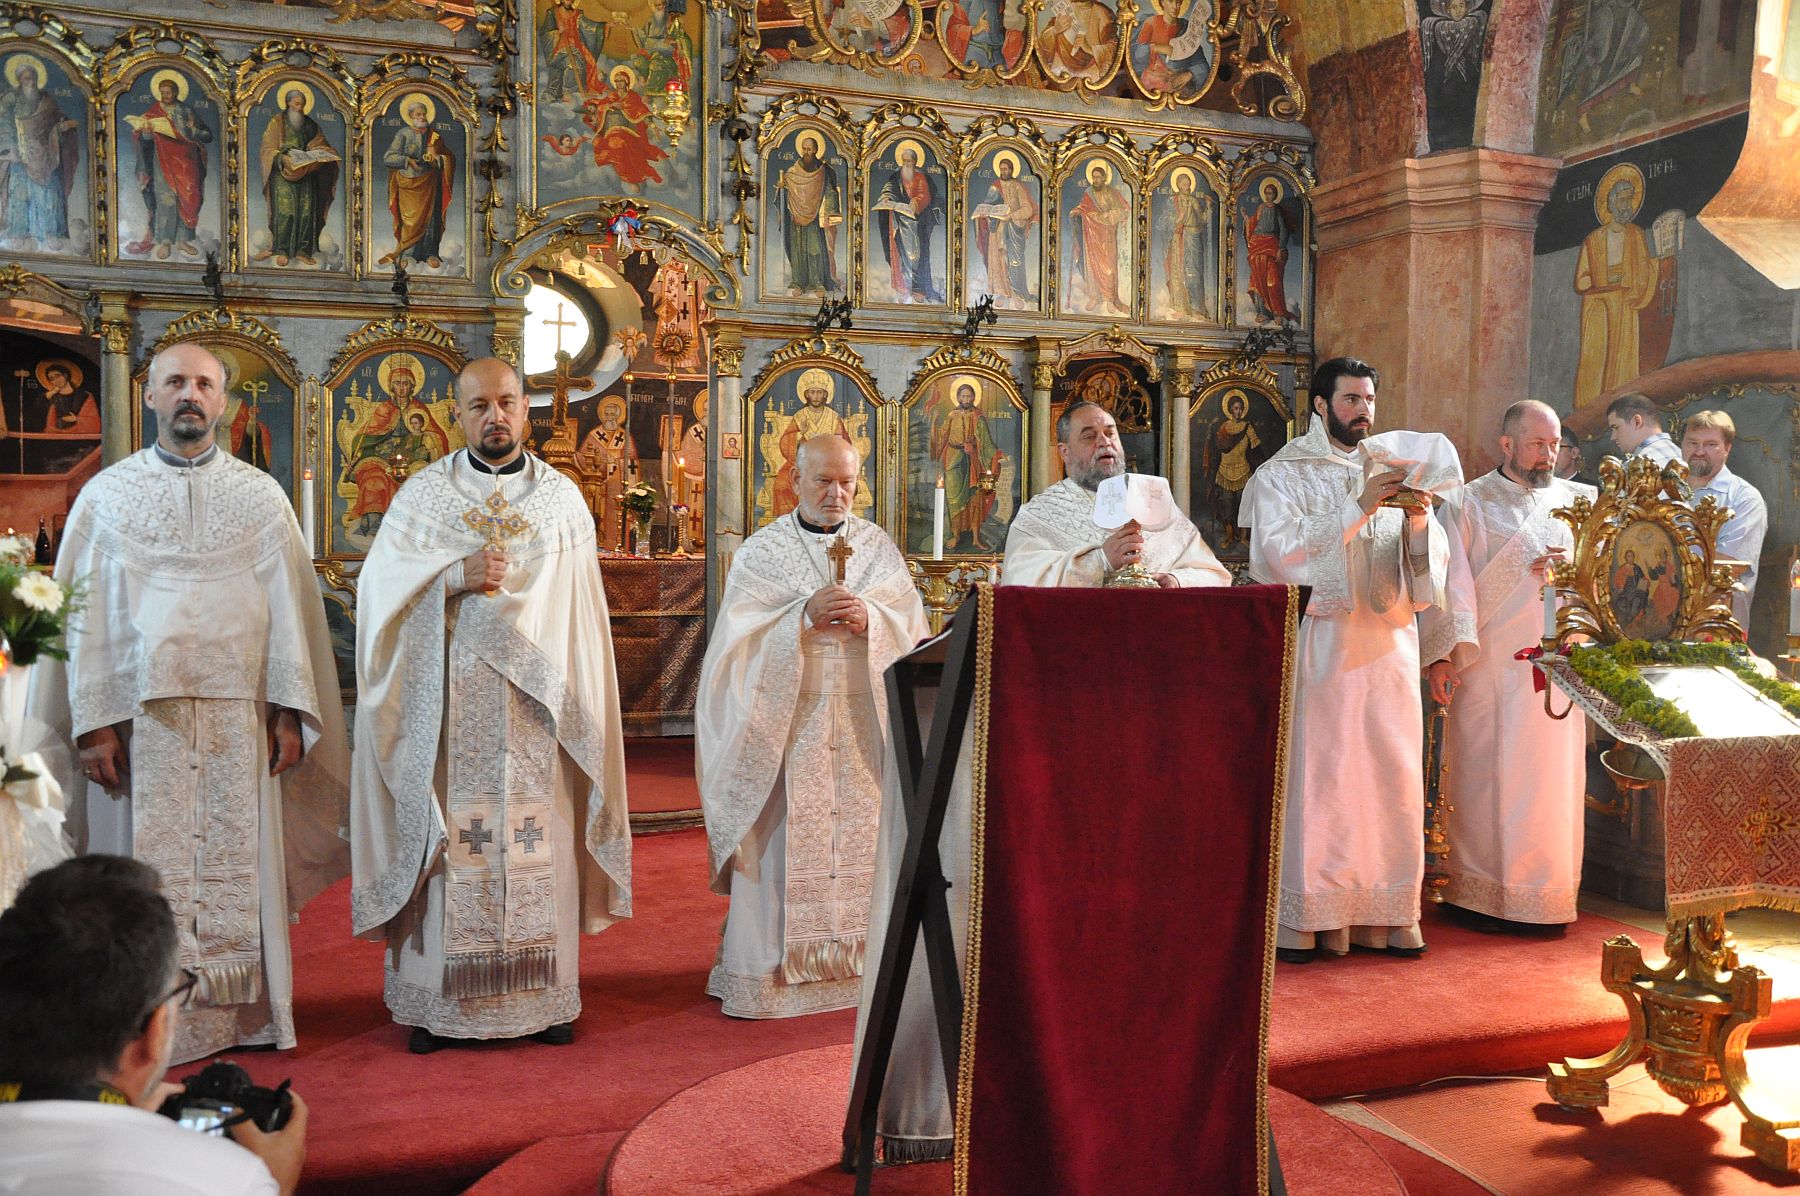 Szent Iván-napi búcsú - püspöki liturgia lesz a szerb ortodox templomban szombaton